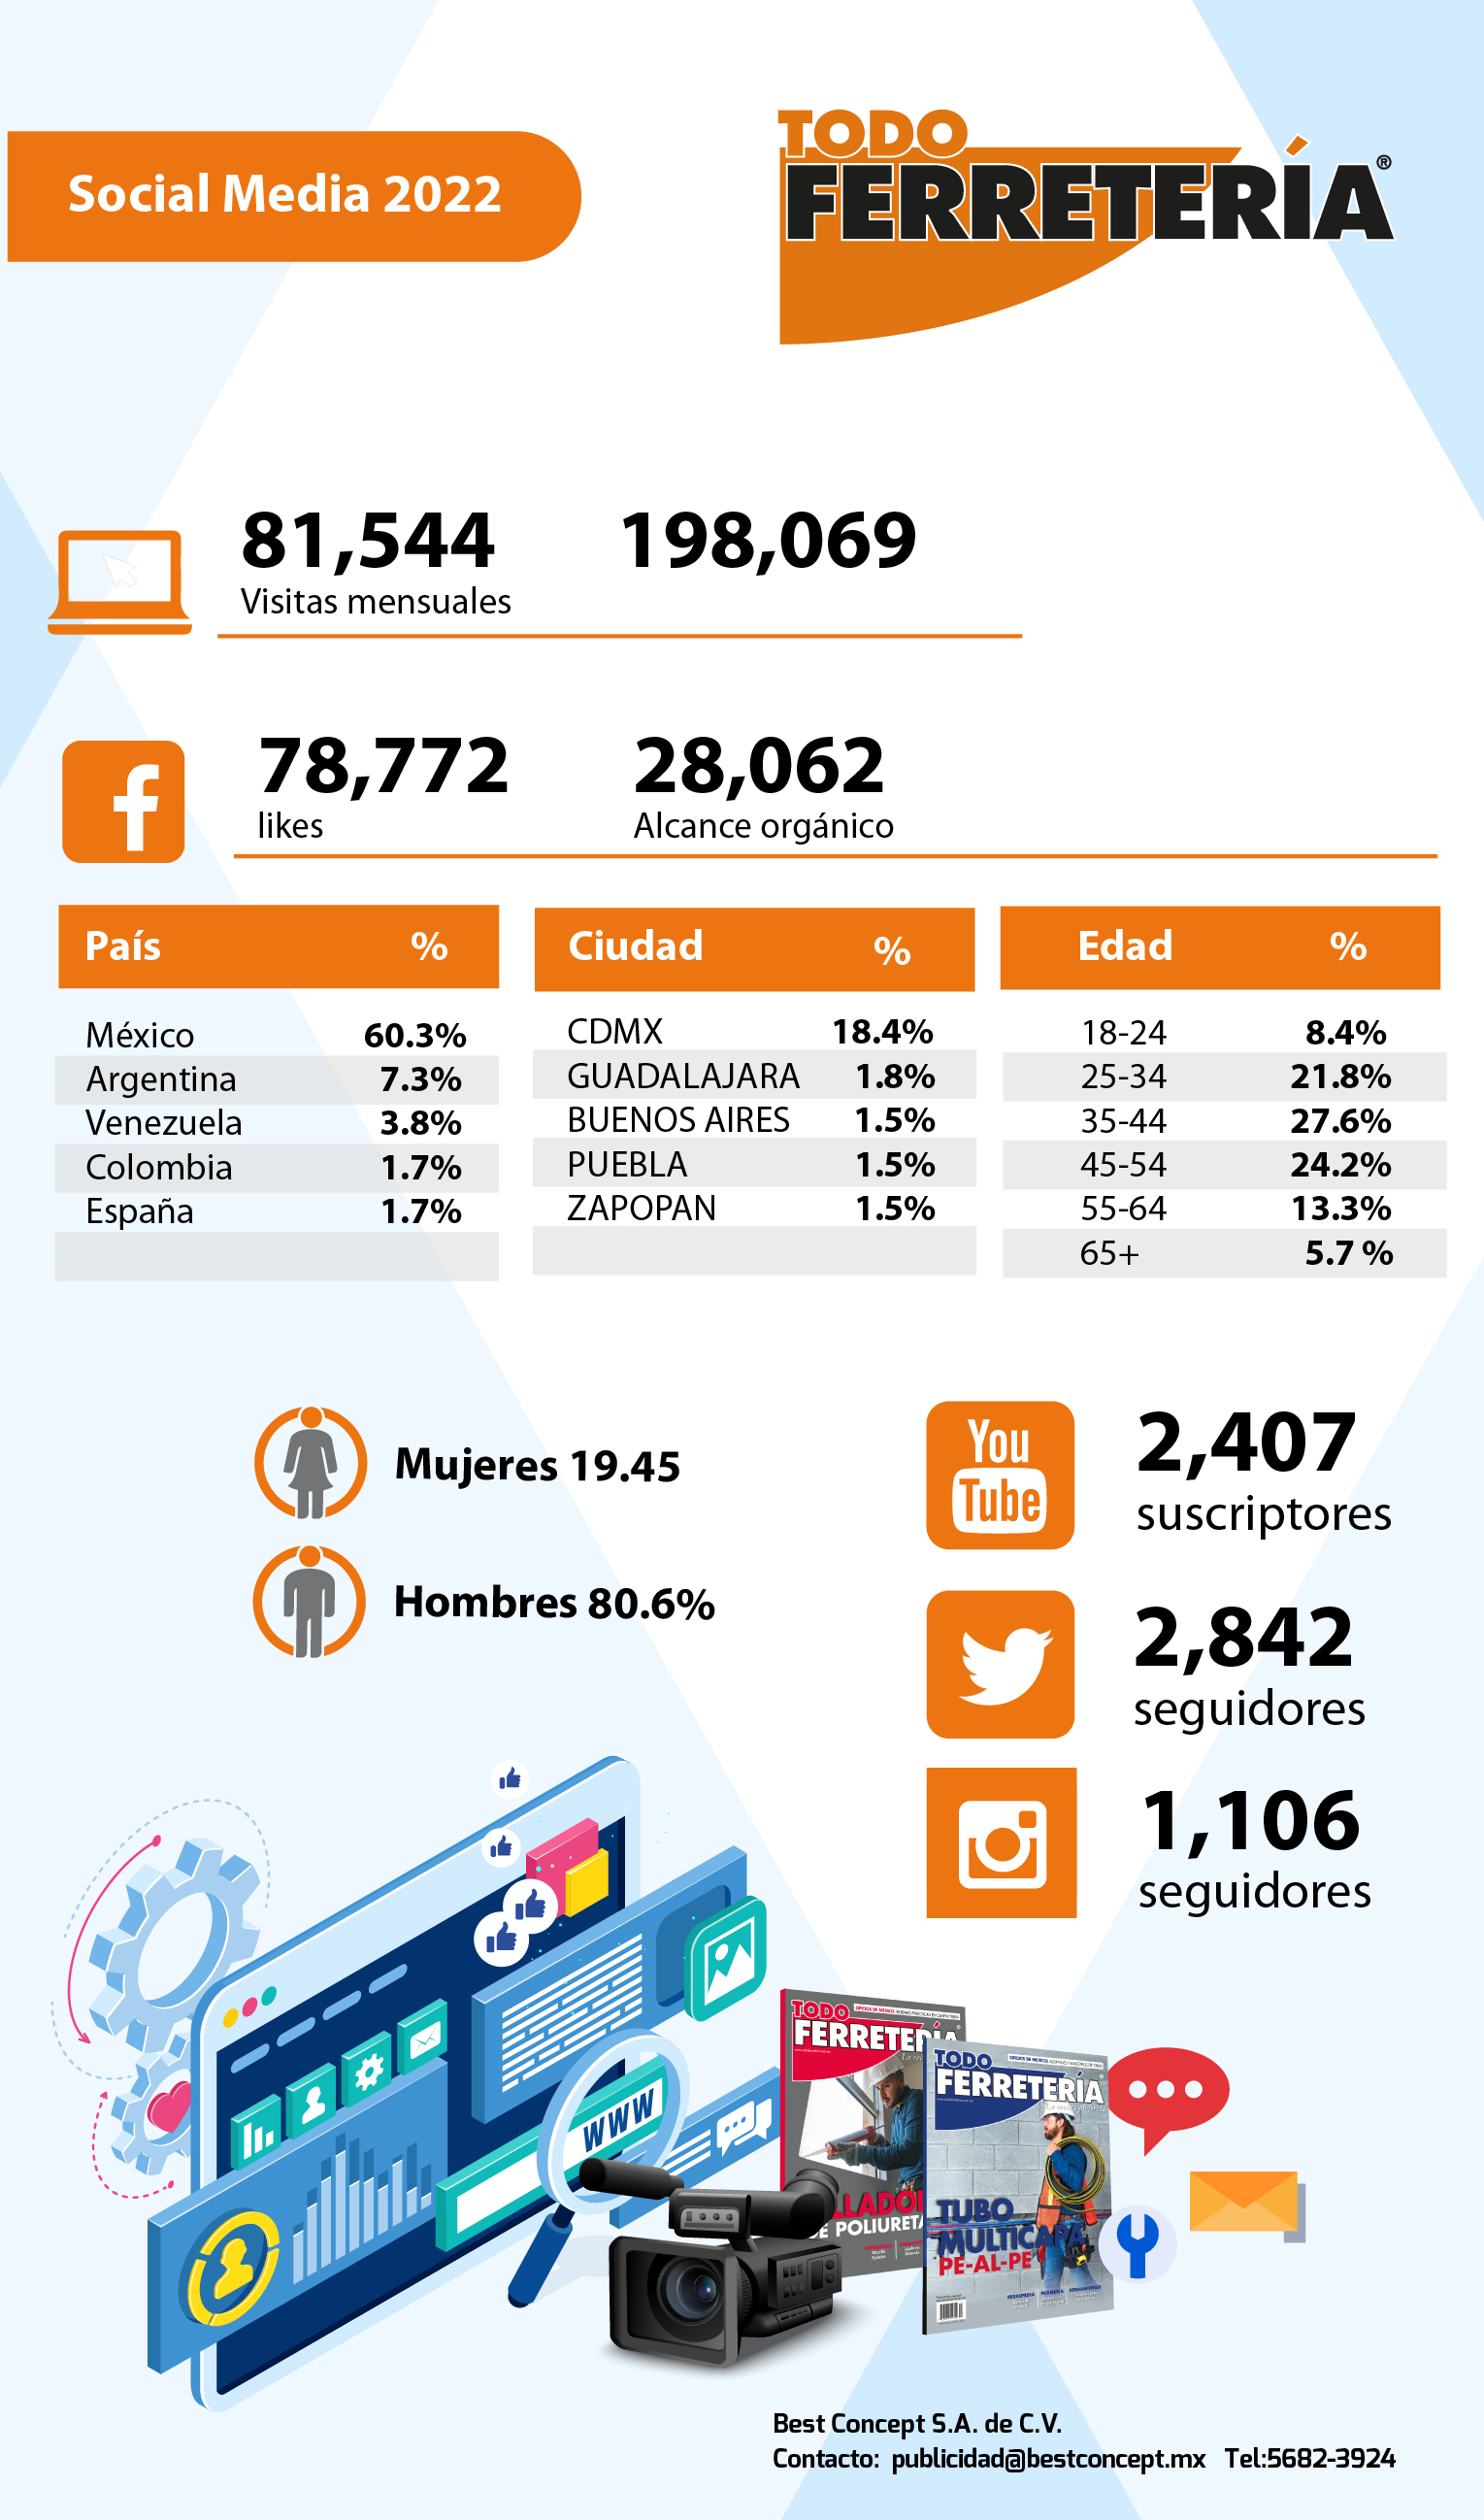 tf-media-kit-y-social-media-2022-03